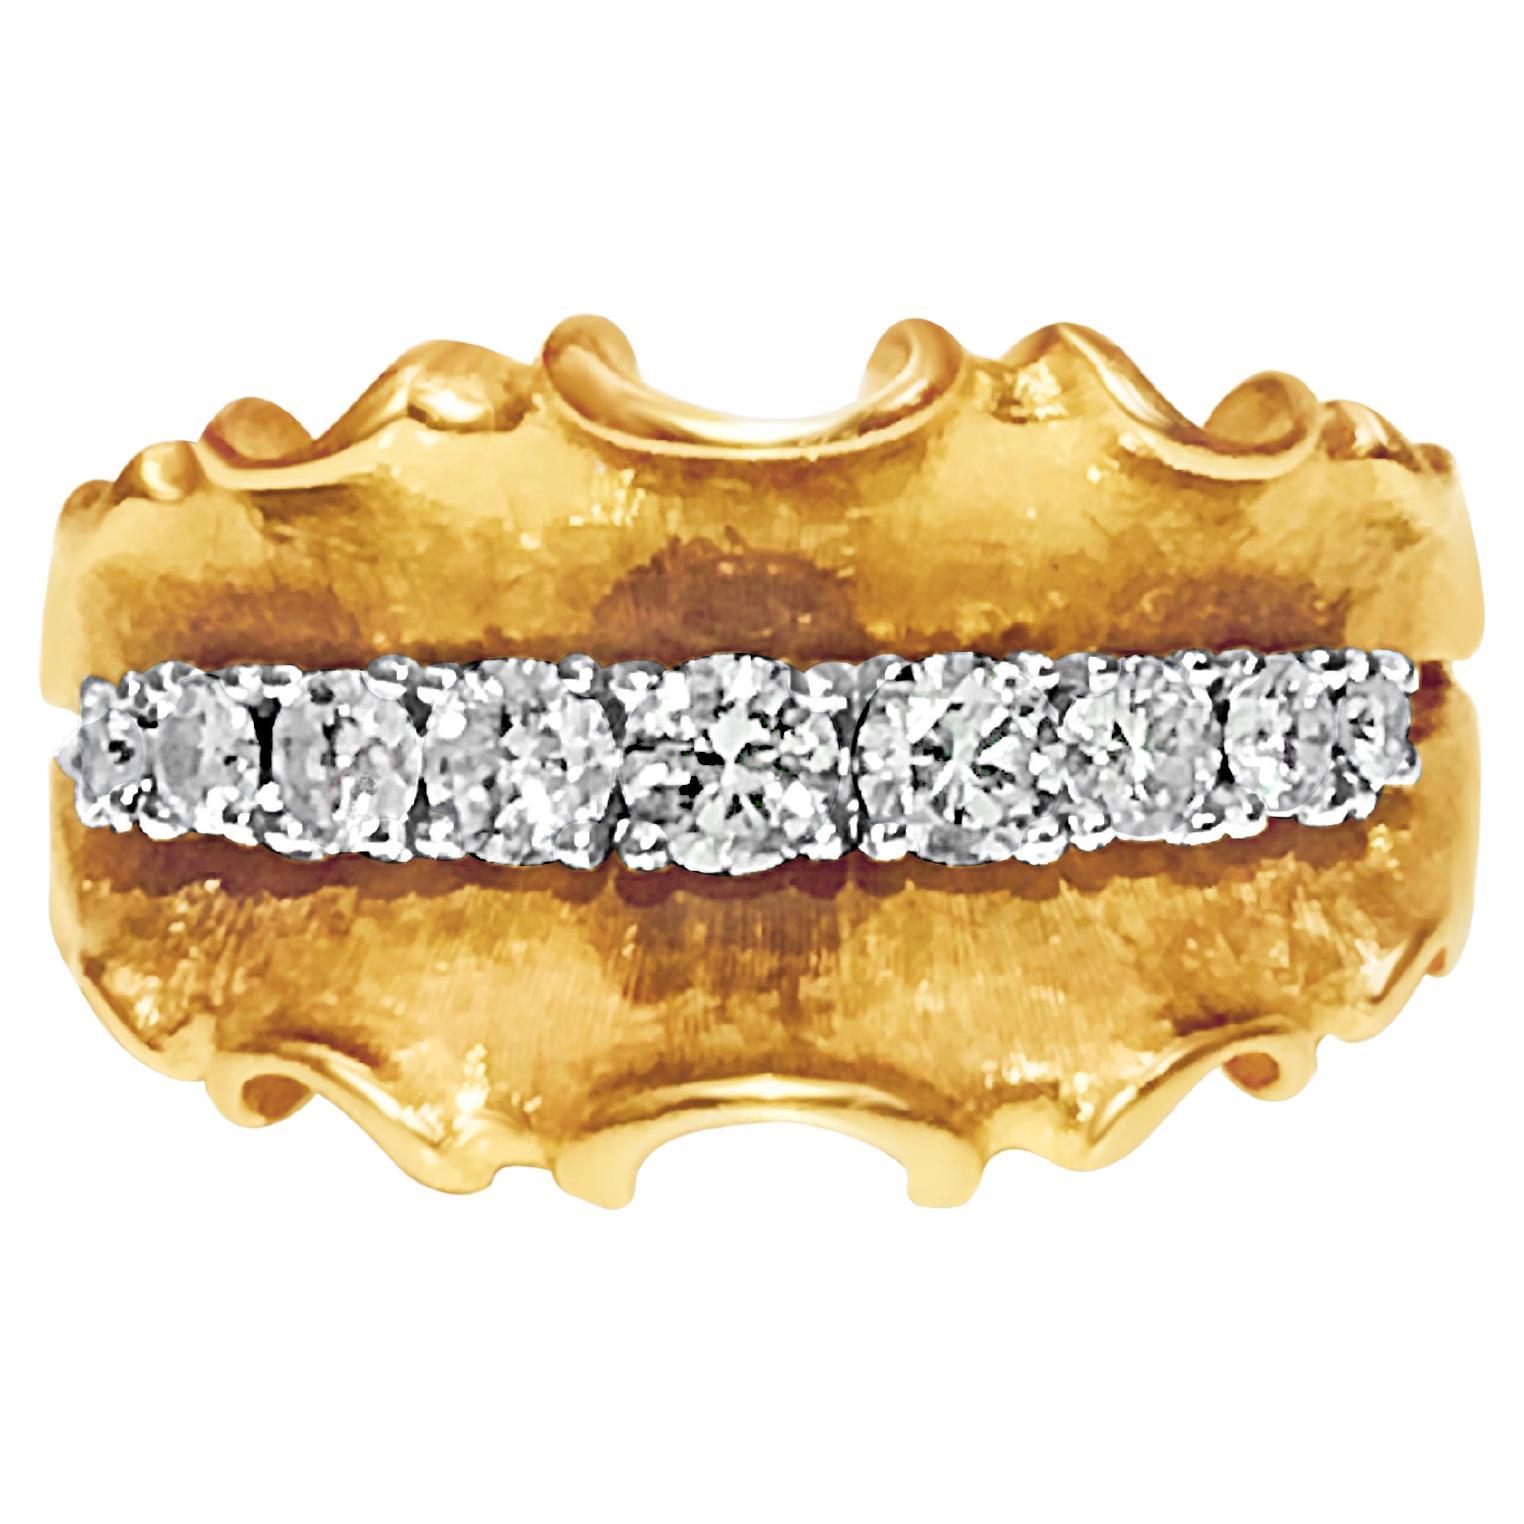 14K Yellow Gold, 1.10 Carat VINTAGE White Diamond Ring.